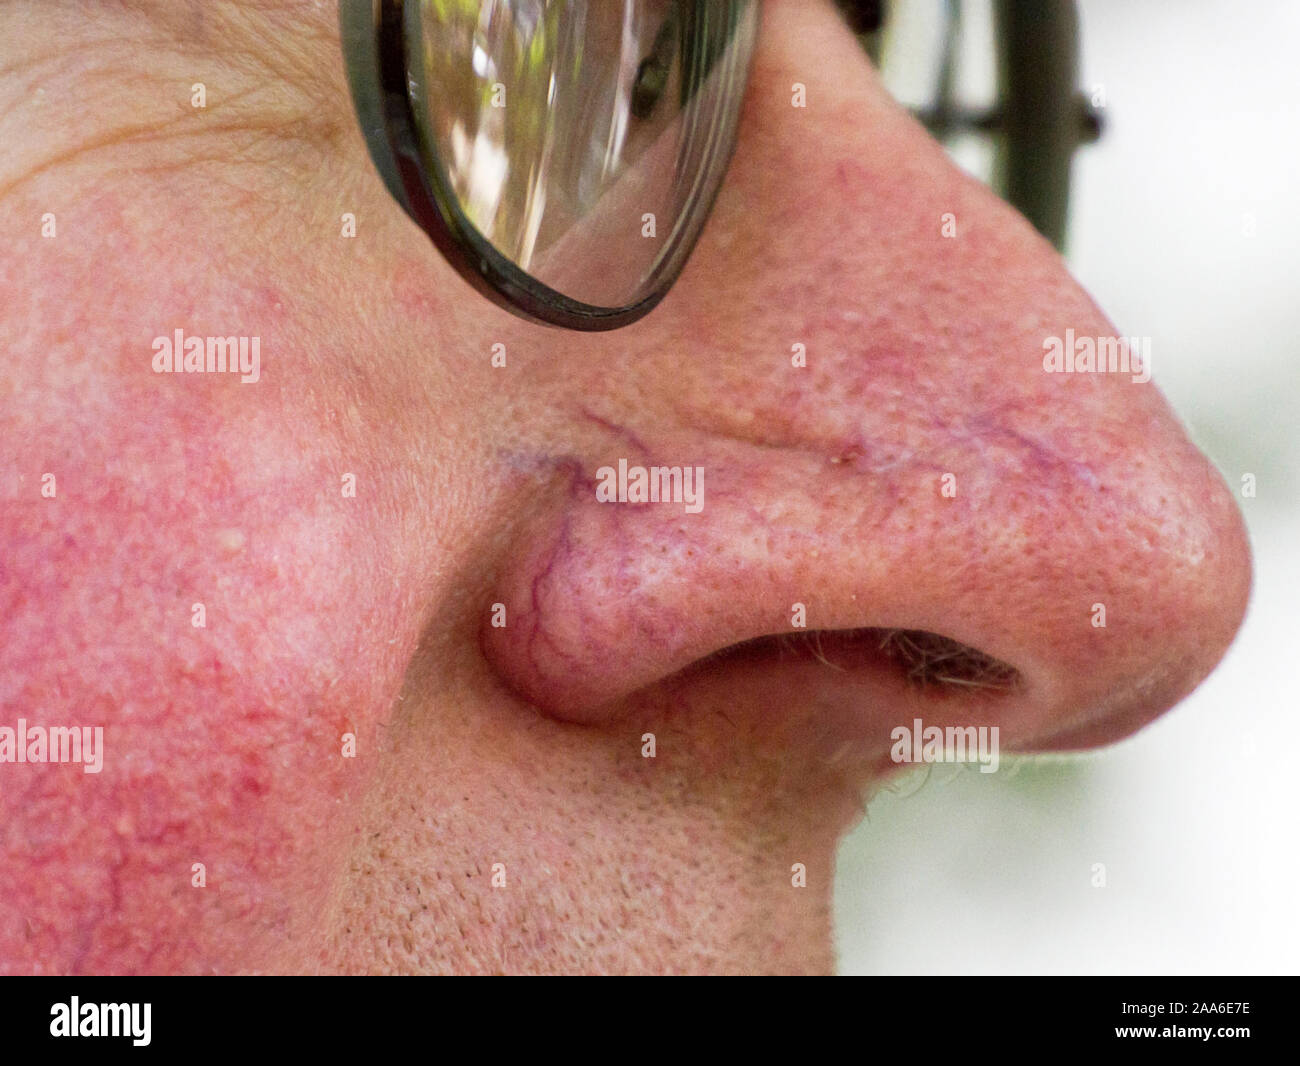 Un close-up d'un vieux visage de l'homme blanc cassé avec les capillaires et veines de la peau sur le nez et les joues et les pores agrandis Banque D'Images